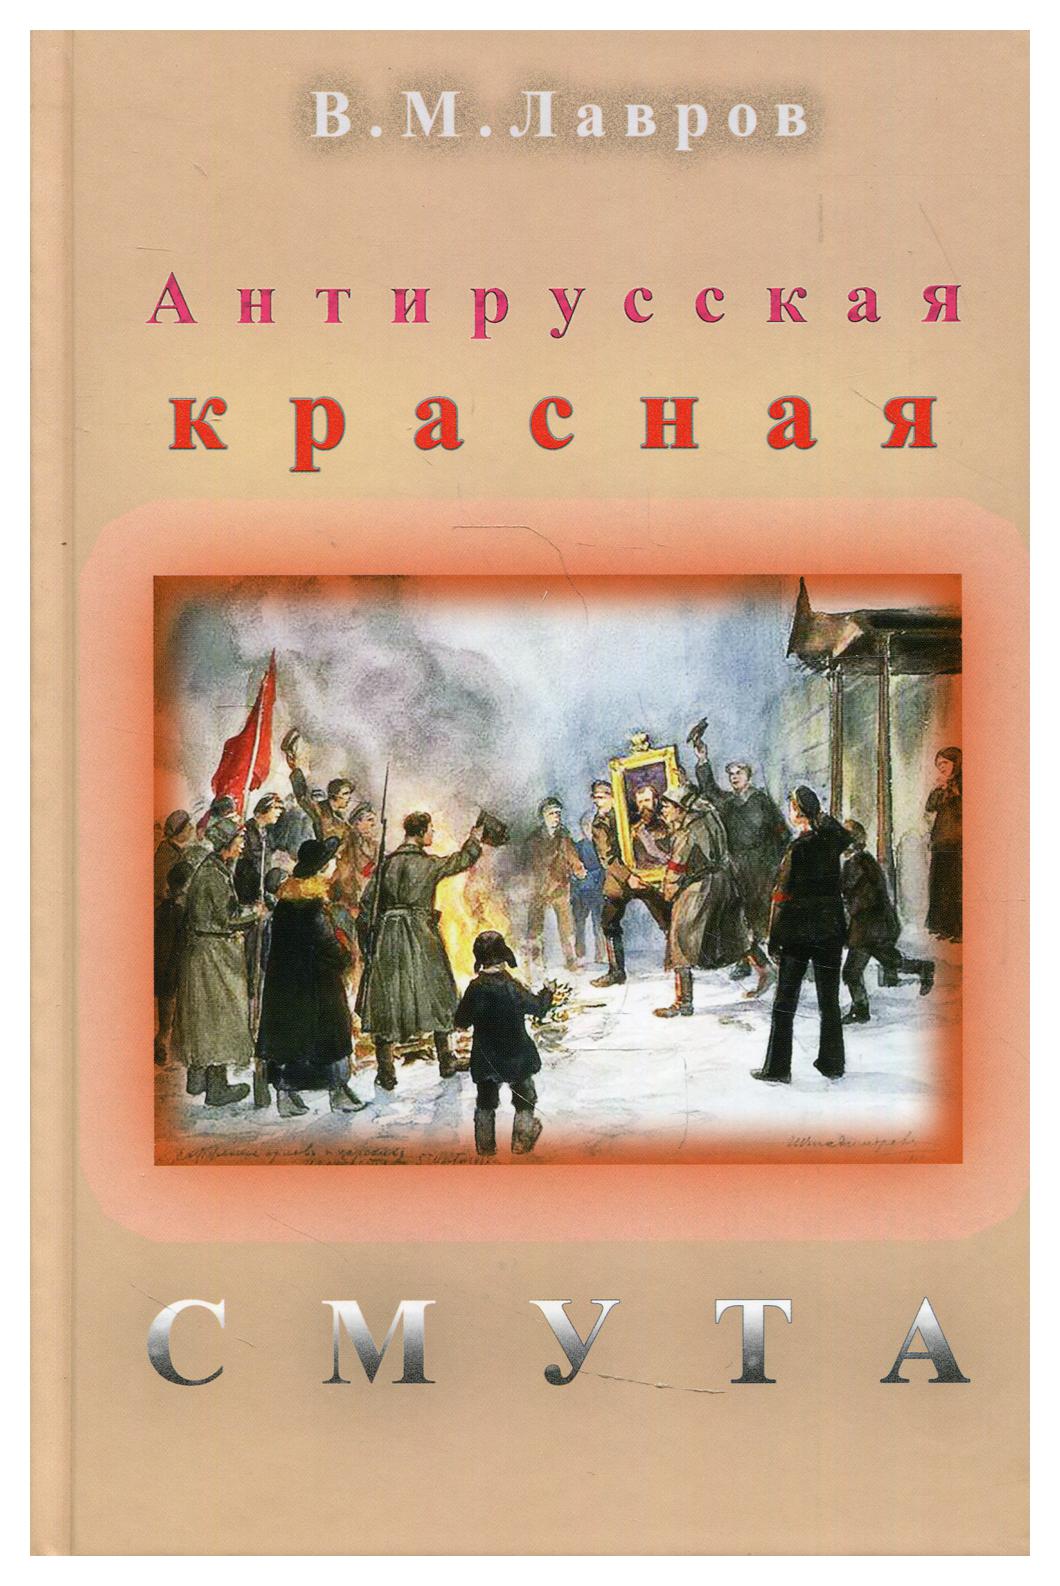 фото Книга антирусская красная смута лана